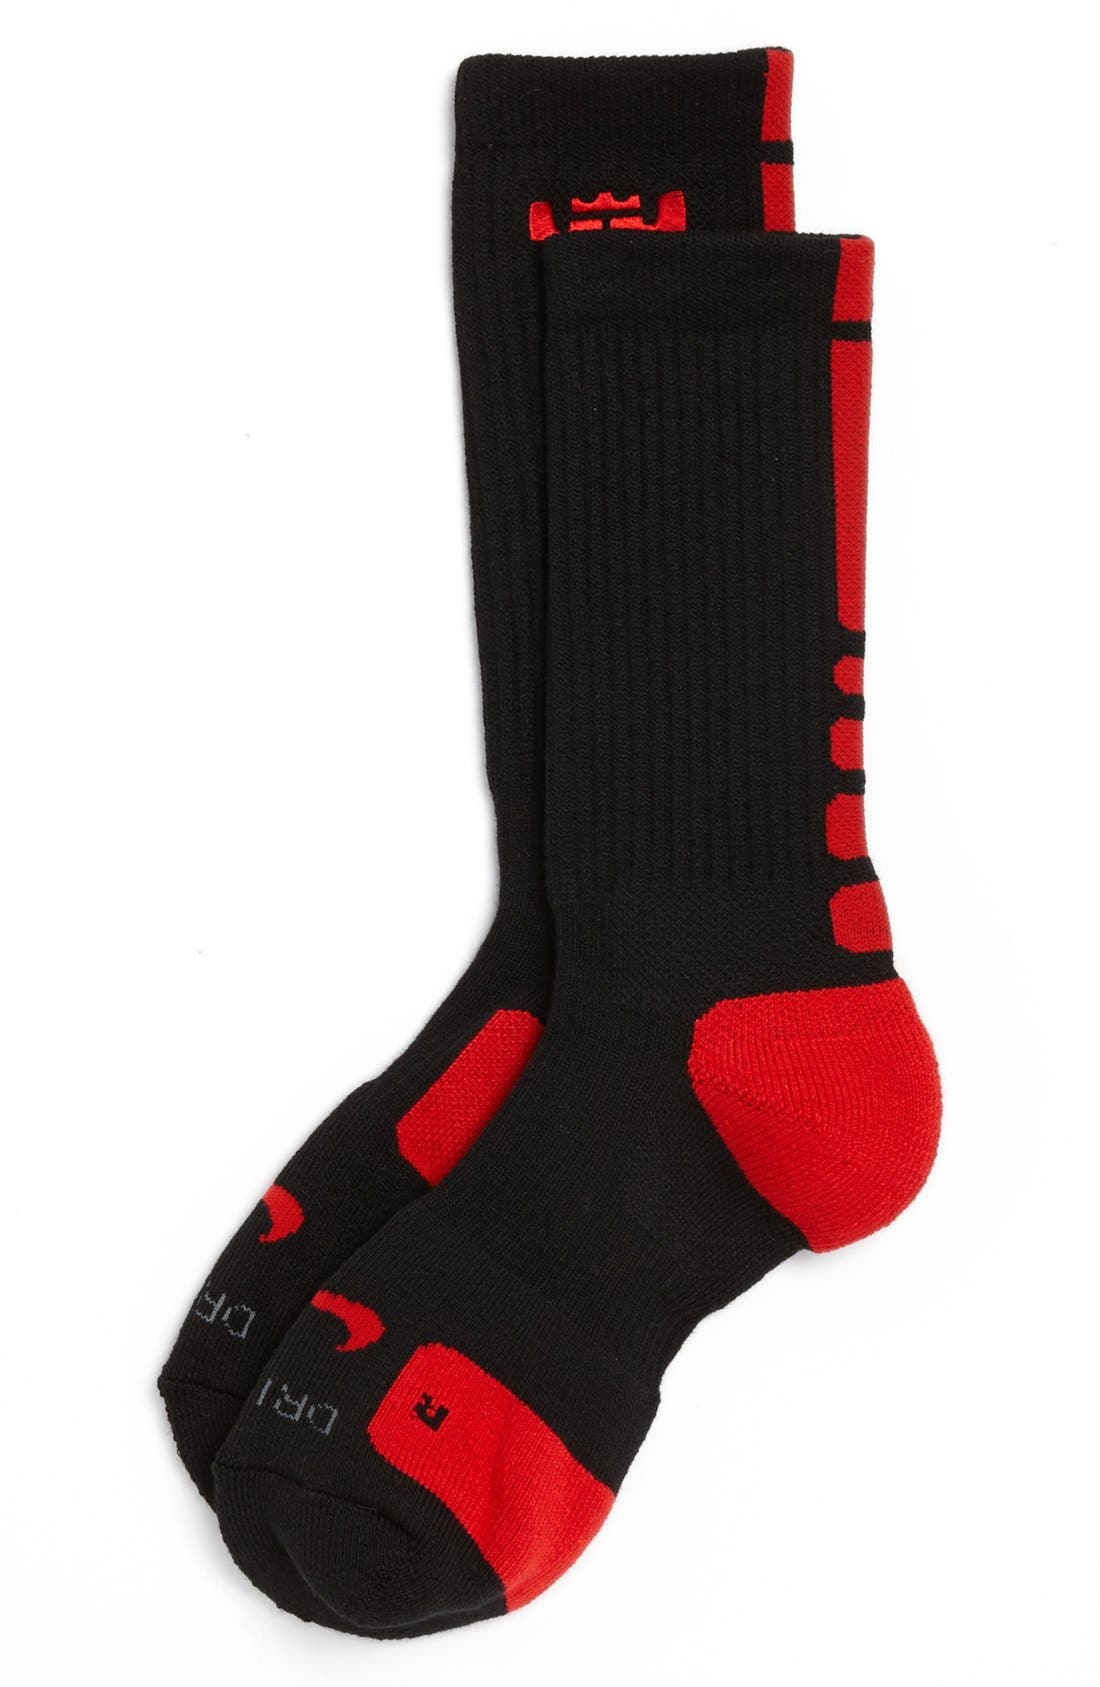 lebron elite socks